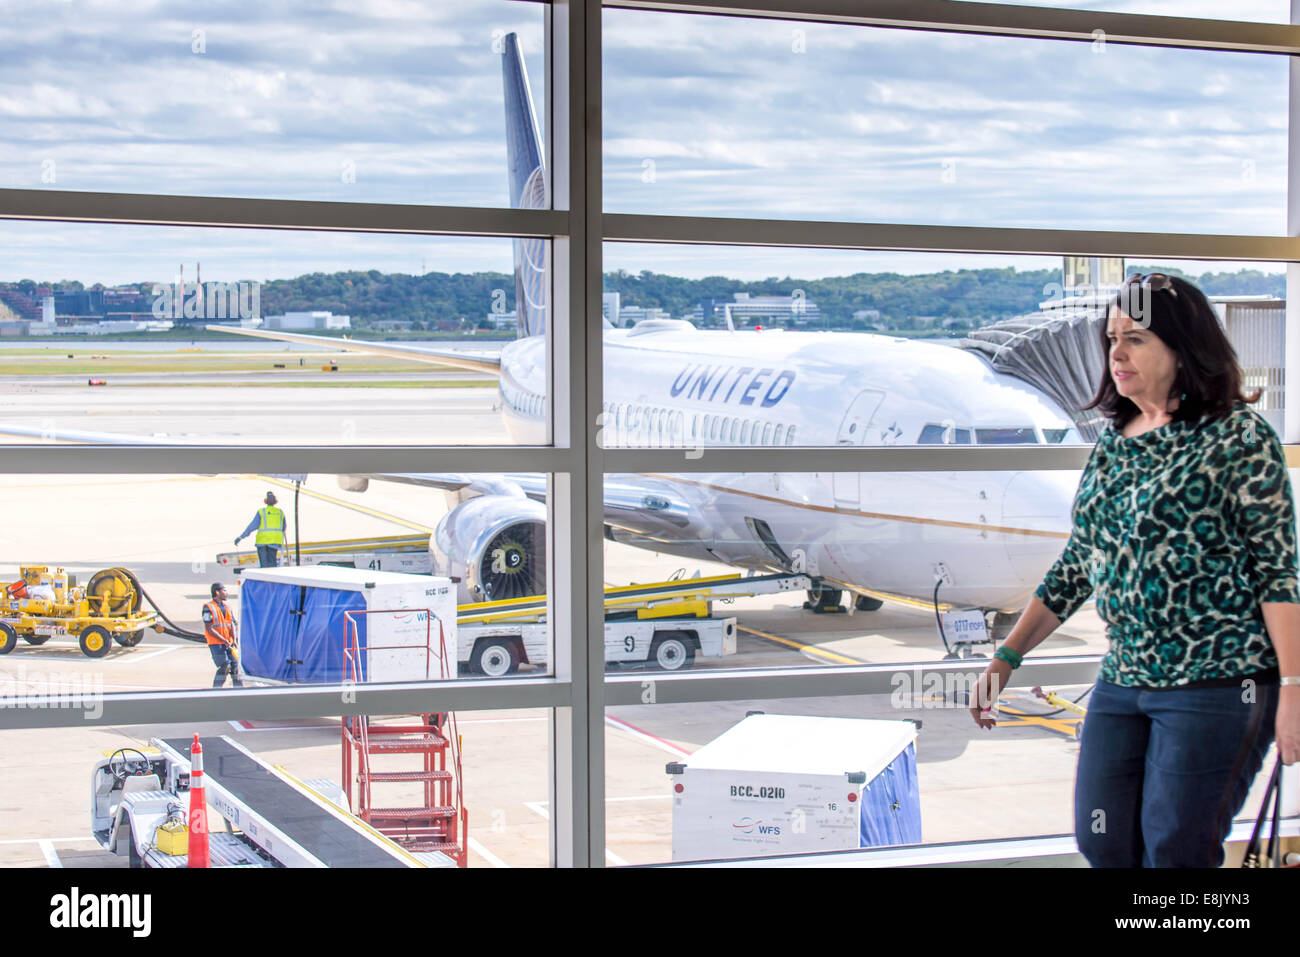 Le DCA, l'Aéroport National Reagan, Washington, DC - balades passager à l'avant d'un aéroport avec une fenêtre Vue du plan à l'extérieur Banque D'Images